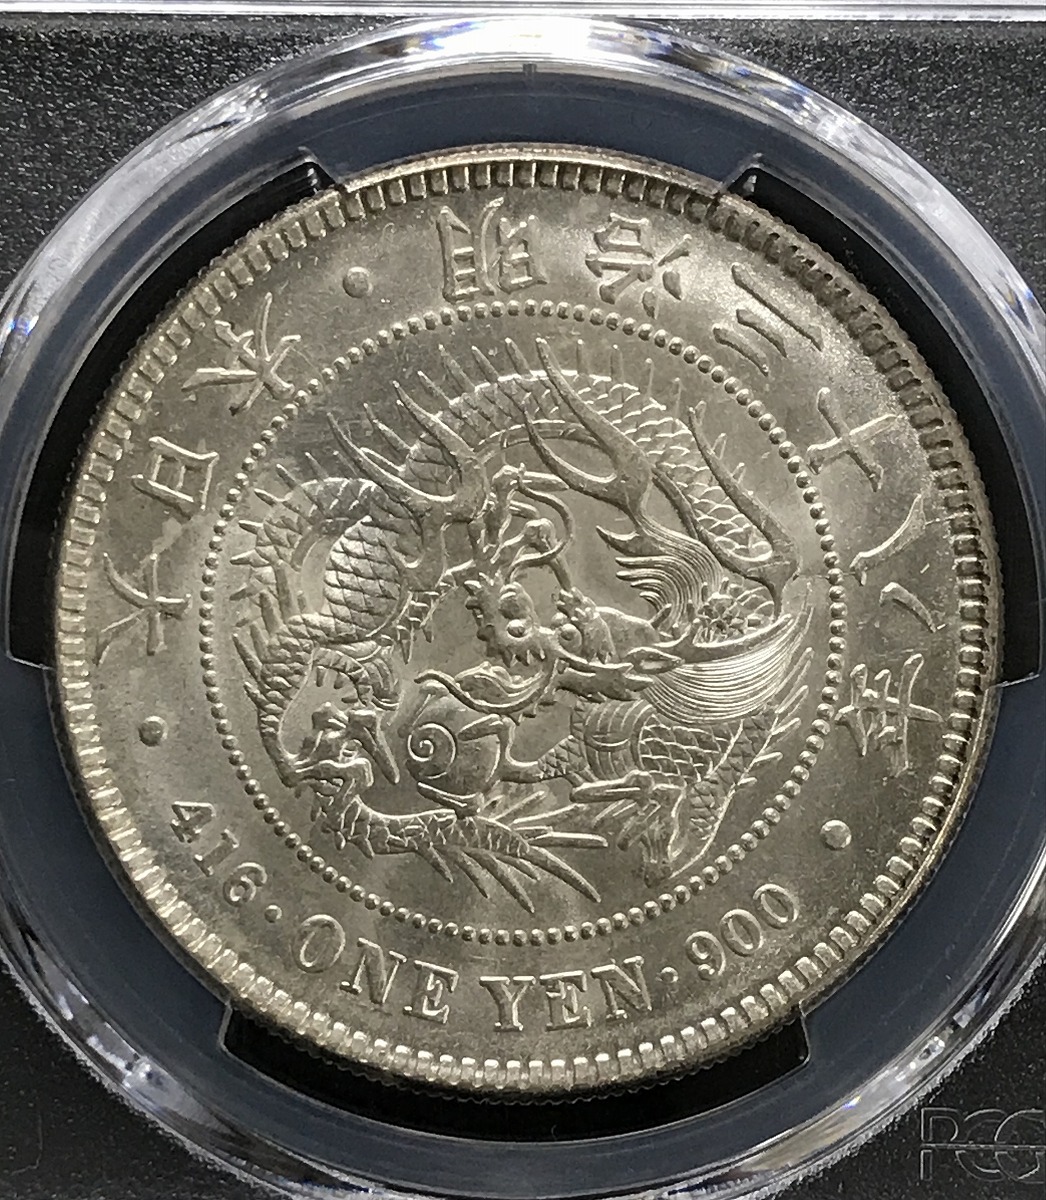 1905年 新1円銀貨(小型) 明治38年 PCGS-MS64 トンあり | 収集ワールド